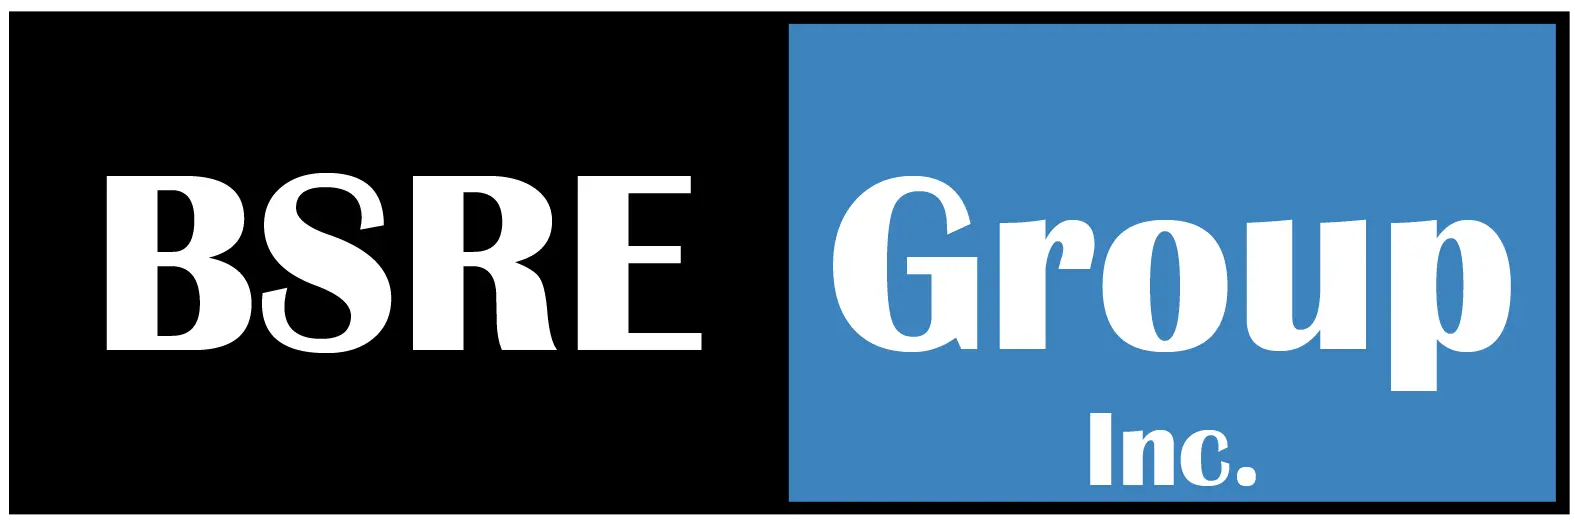 BSRE Group Inc. Logo